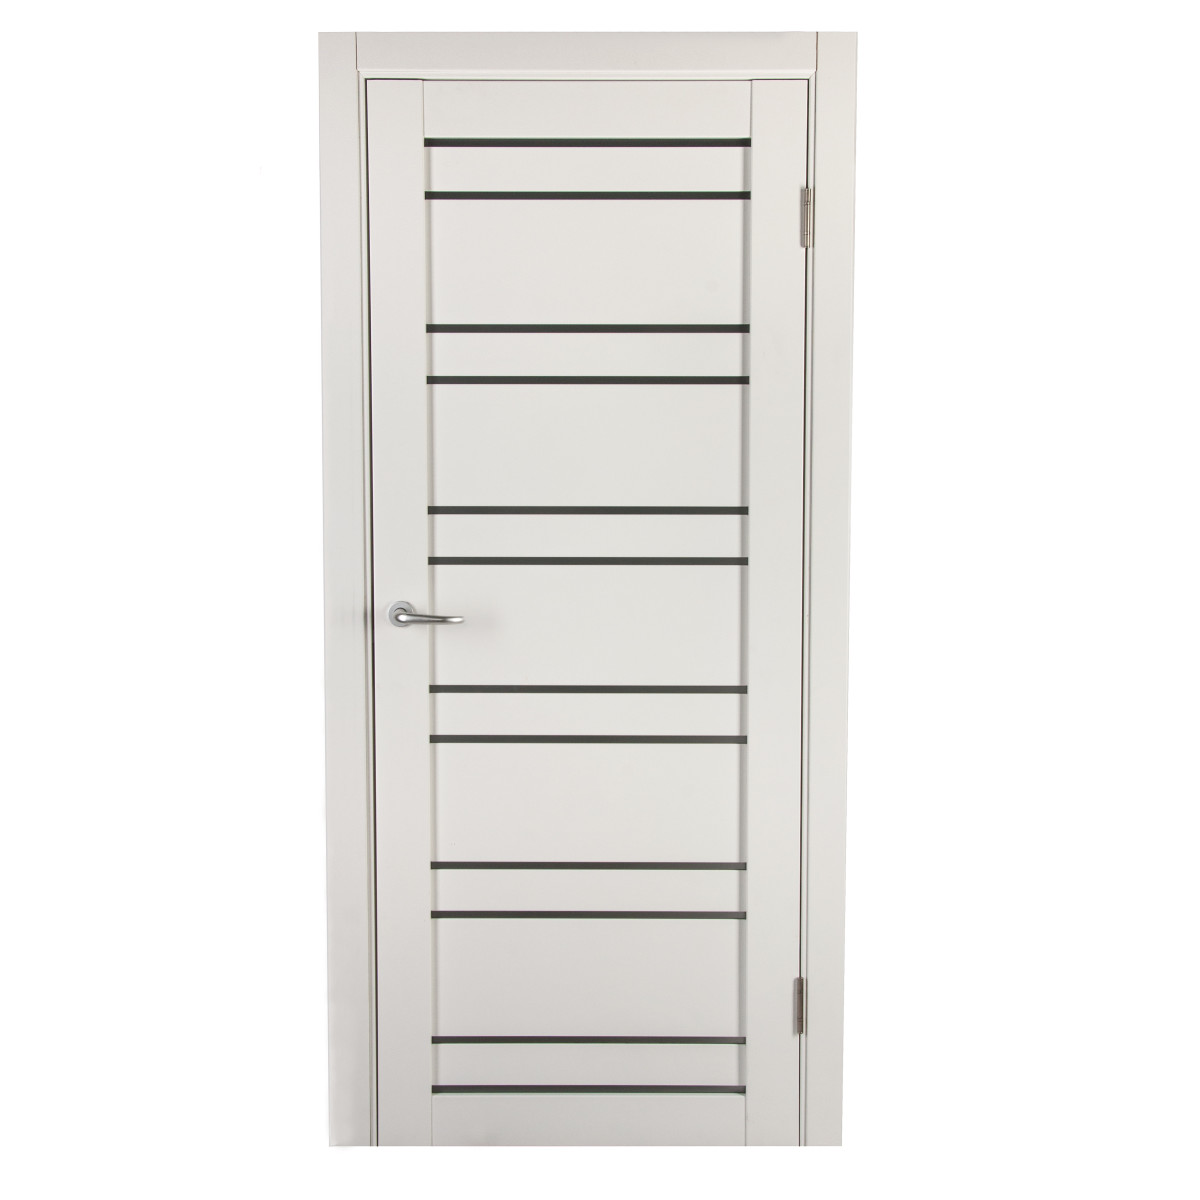 Дверь межкомнатная остеклённая с фурнитурой Парма 70х200 см, Hardflex, цвет белый